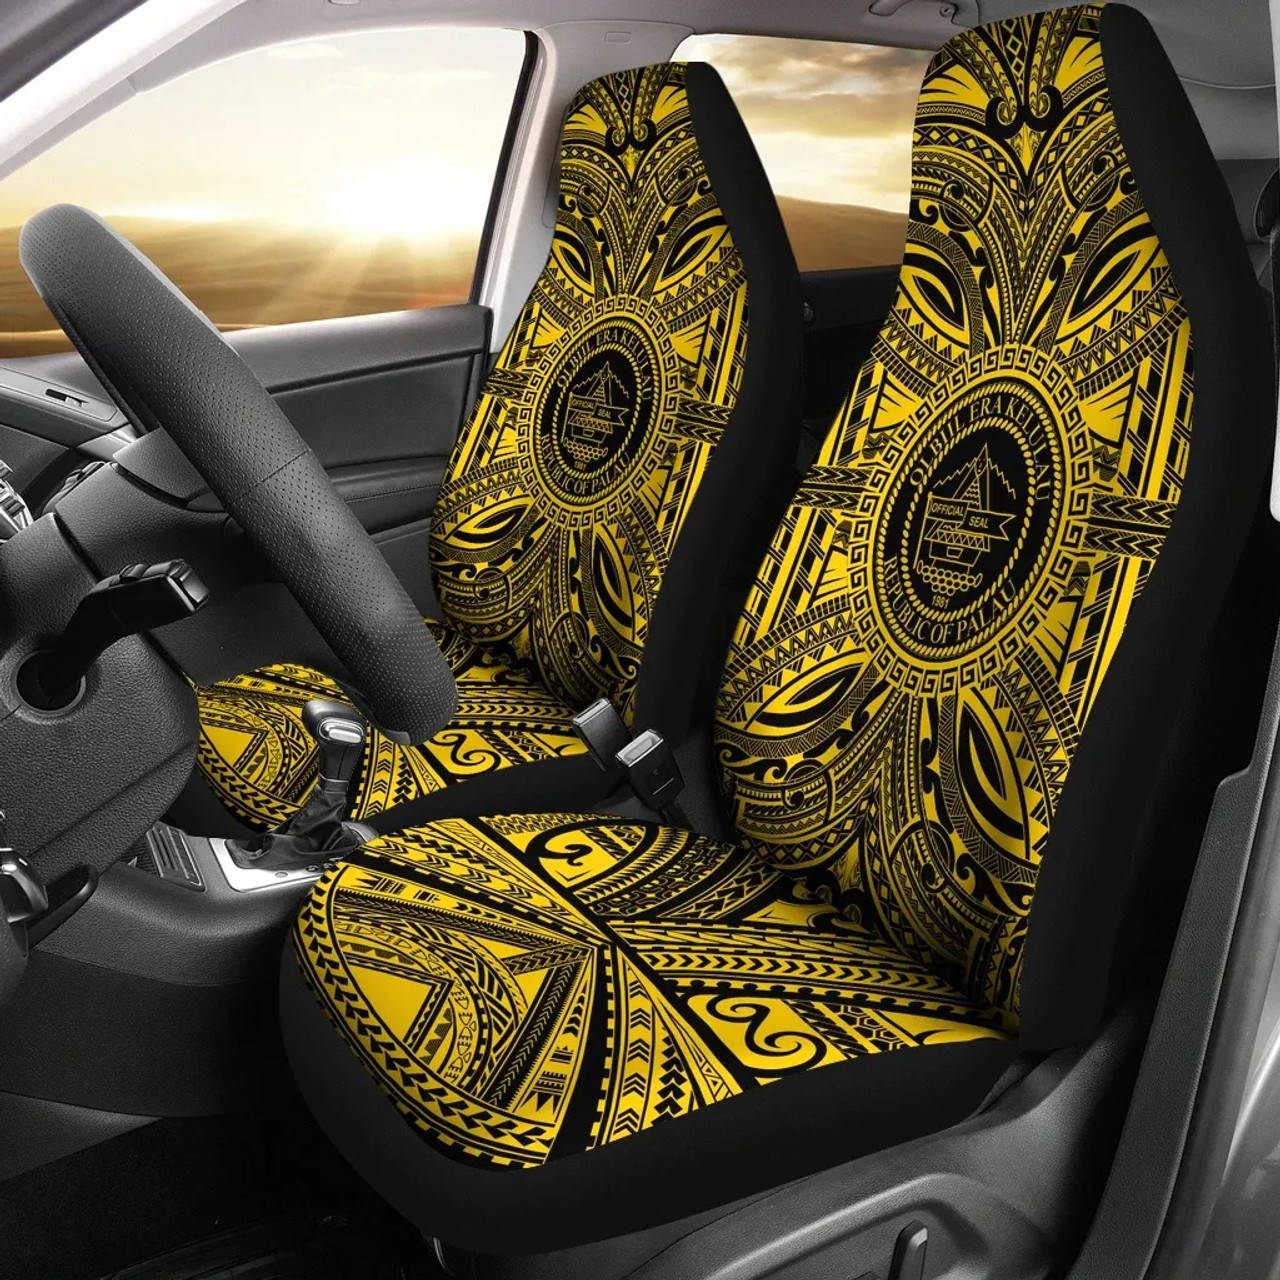 Palau Car Seat Cover - Palau Coat Of Arms Polynesian Gold Black